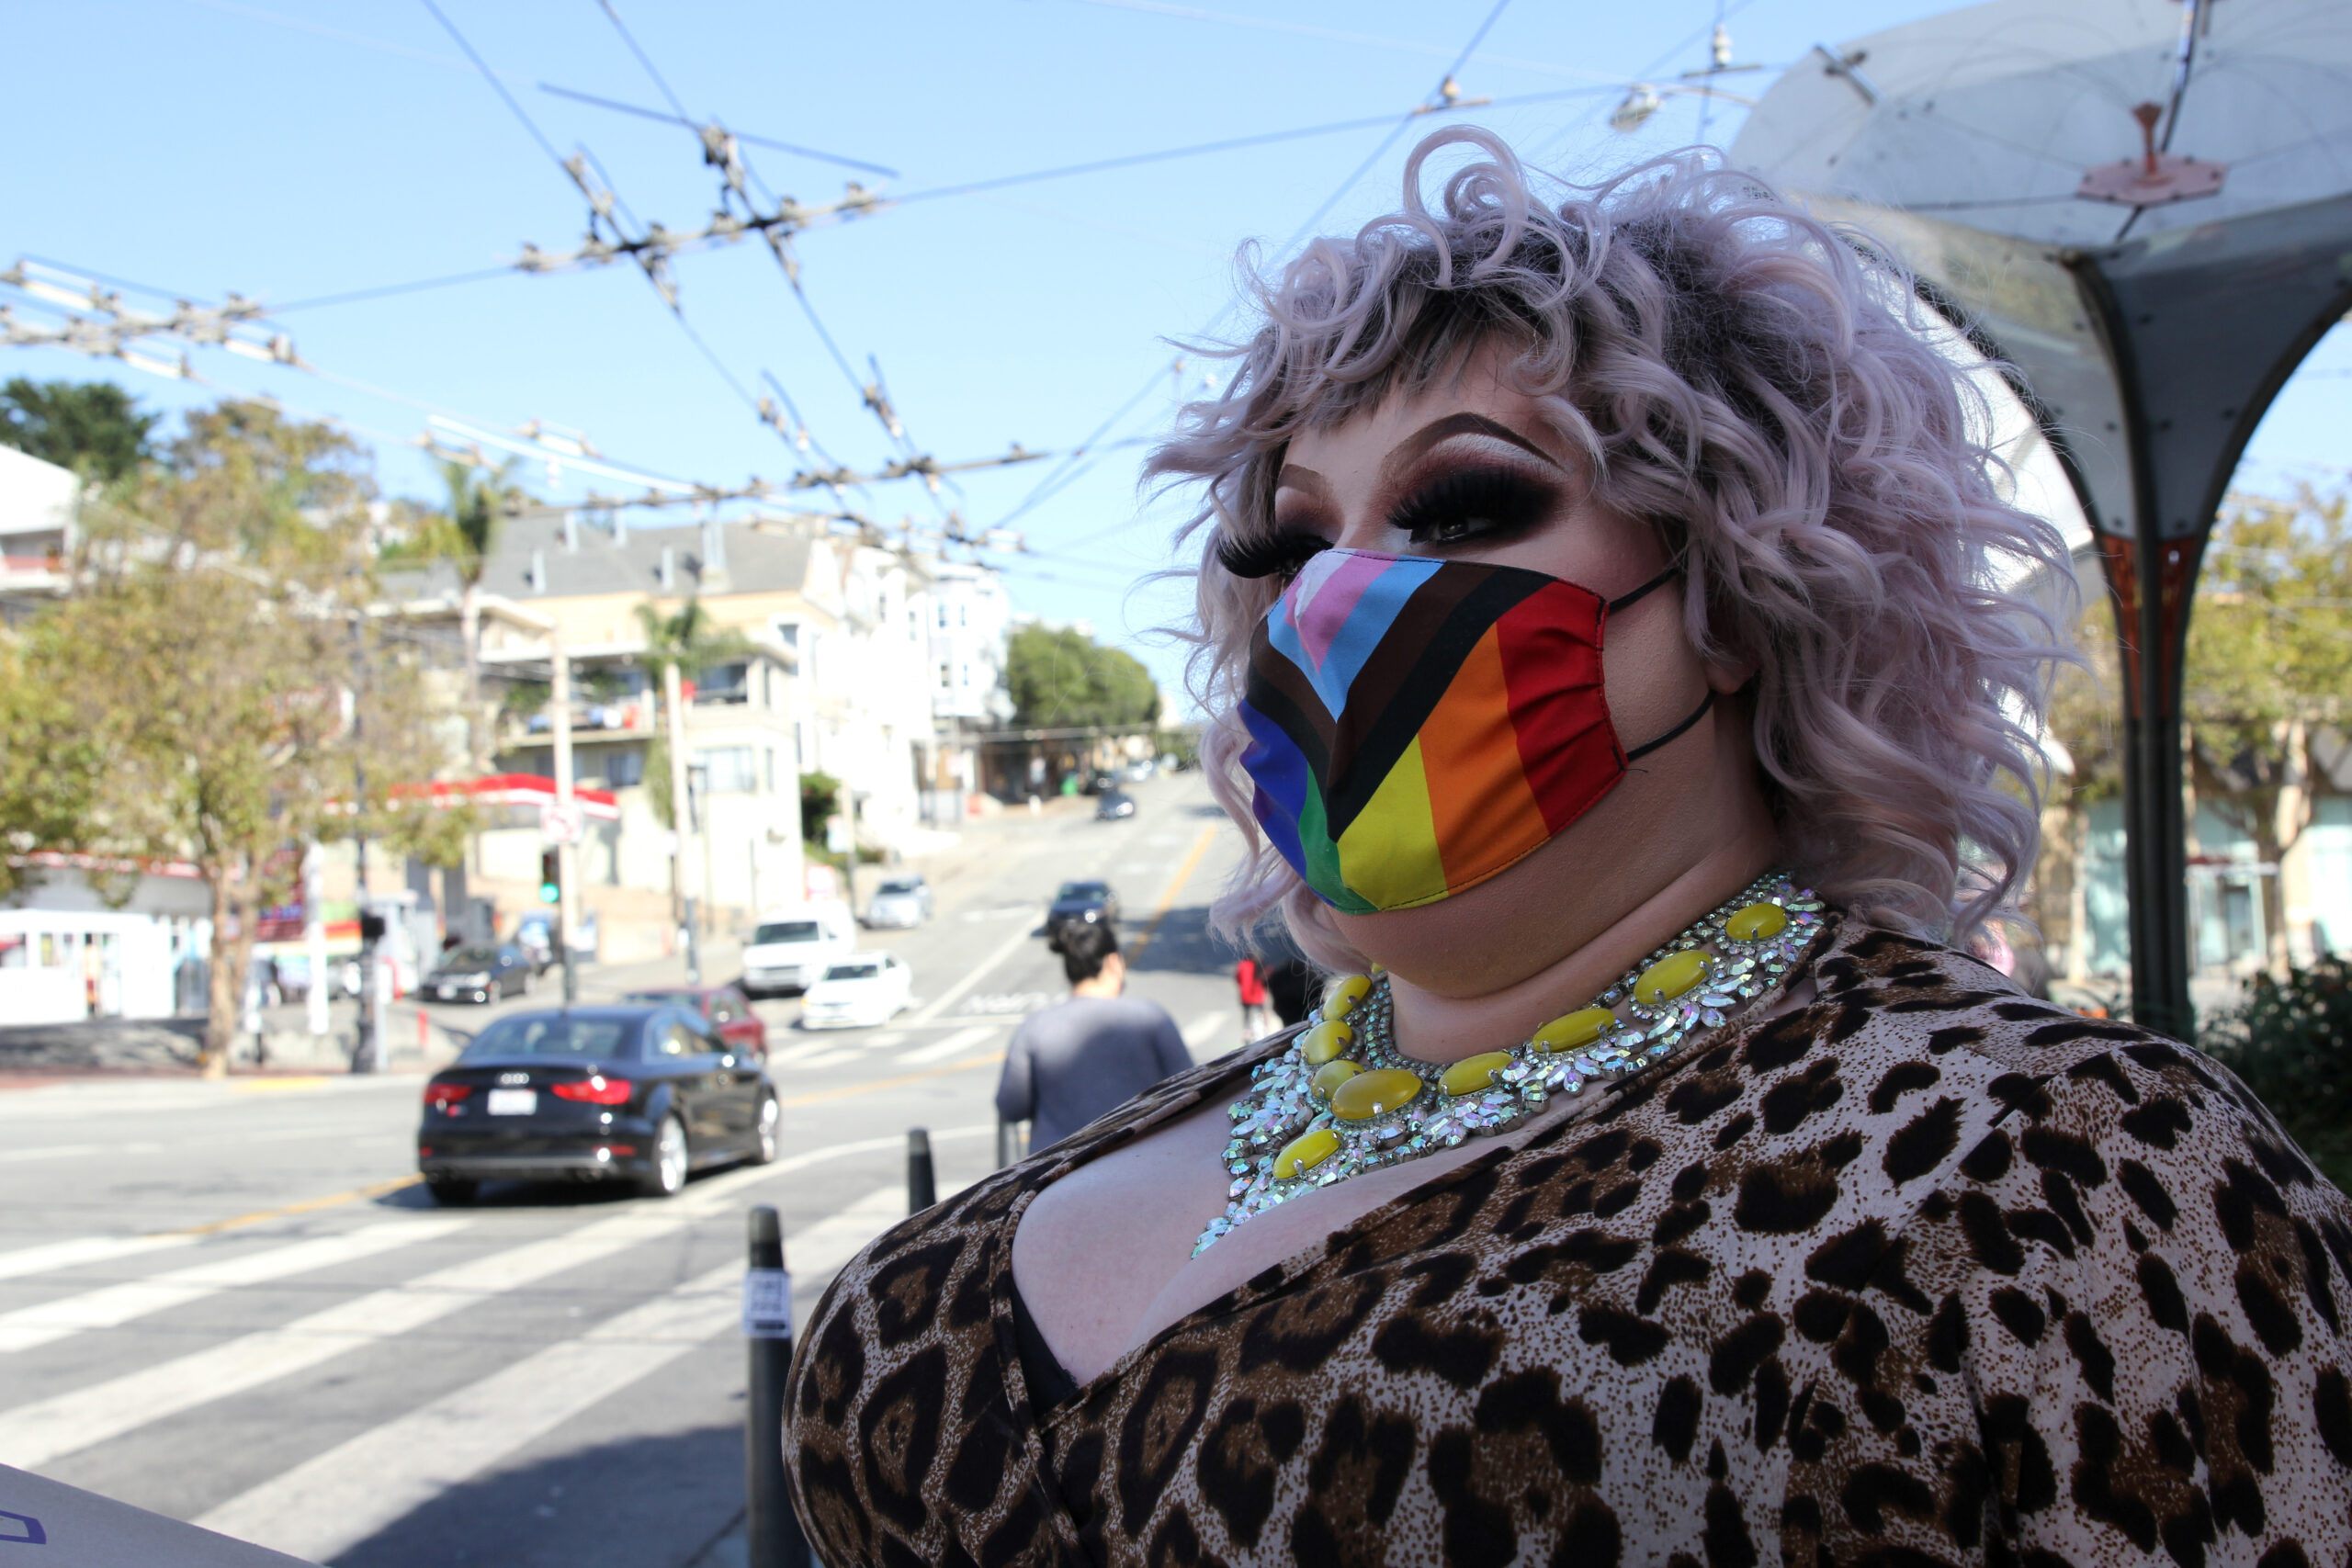 La embajadora drag de "Drag Out the Vote", "Kylie Minono", espera cruzar la calle antes de un espectáculo de mediodía al aire libre en San Francisco, California, EEUU. 27 de septiembre de 2020. REUTERS/Nathan Frandino